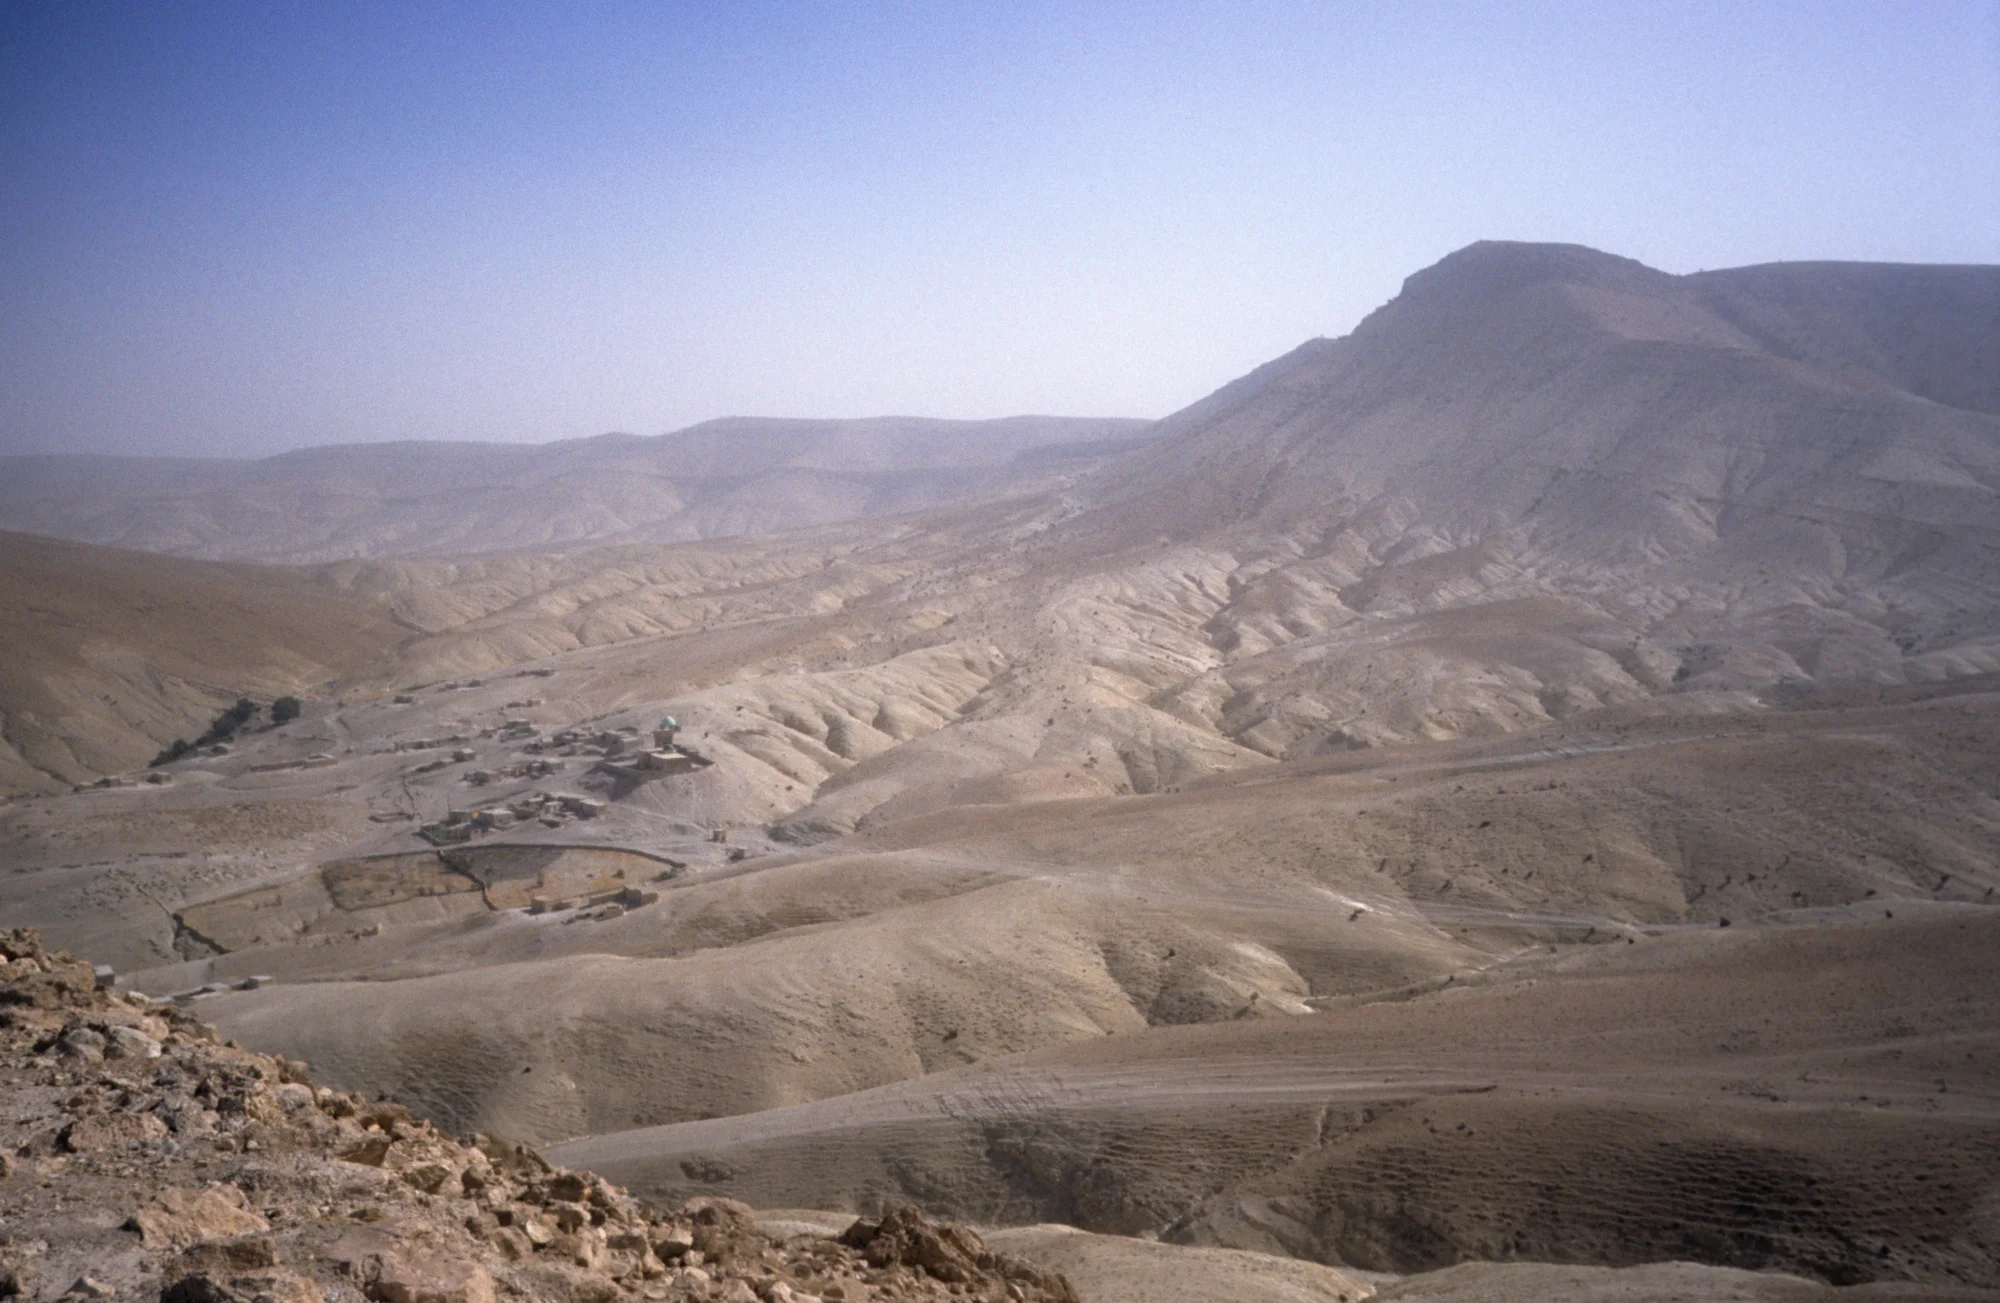 منظر عام لجبل عبد العزيز يظهر قرية الغورة التي تحتوي على مقام عبد العزيز